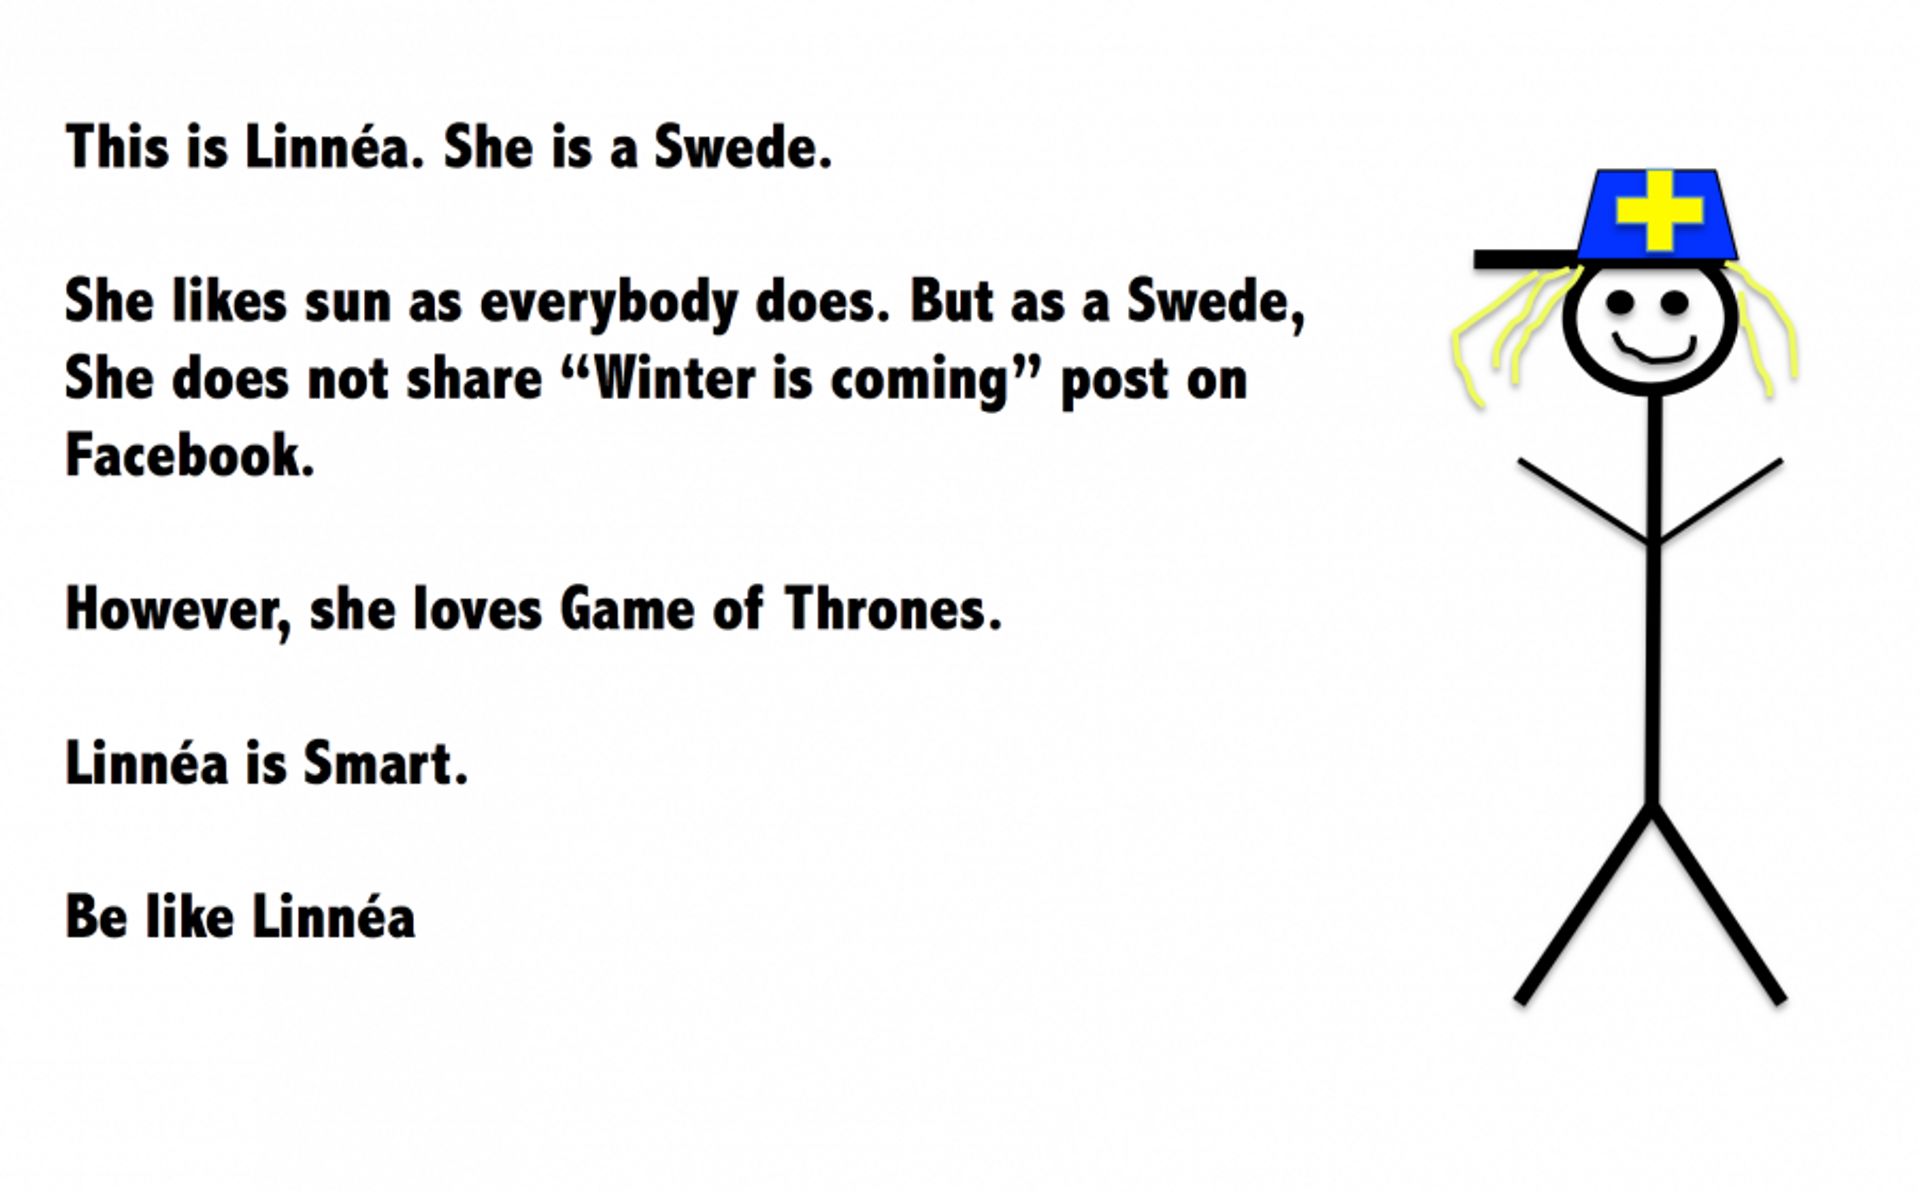 Be like a swede